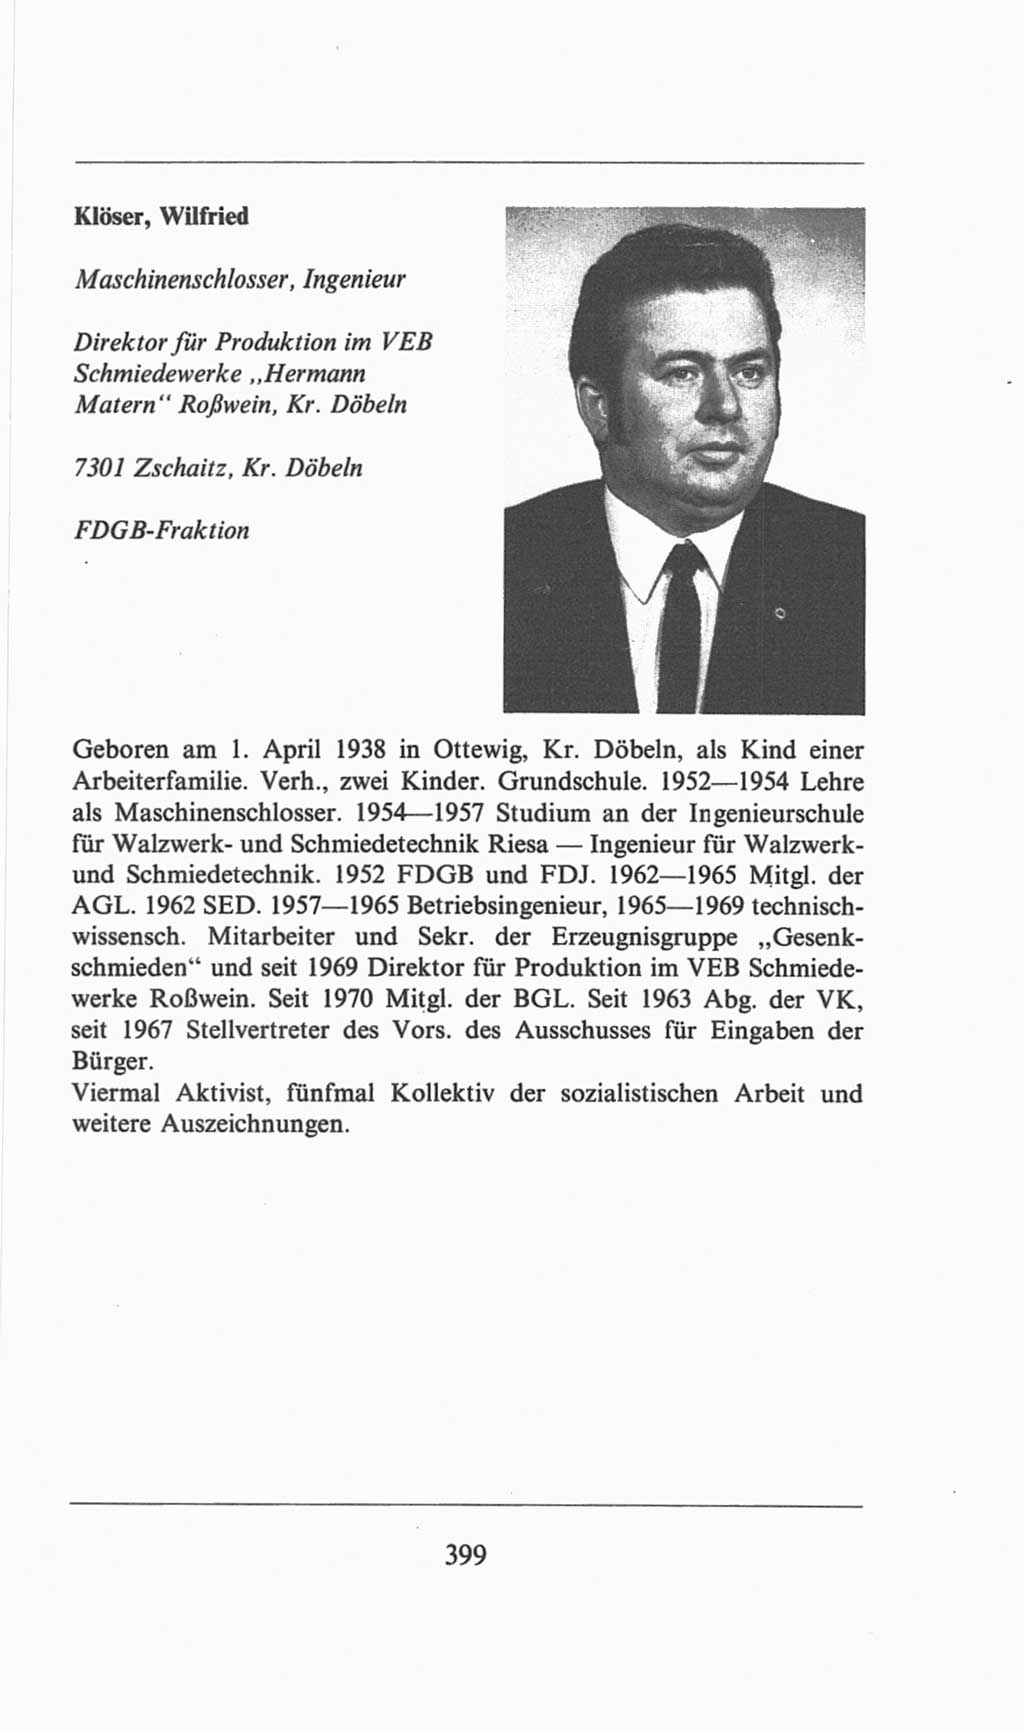 Volkskammer (VK) der Deutschen Demokratischen Republik (DDR), 6. Wahlperiode 1971-1976, Seite 399 (VK. DDR 6. WP. 1971-1976, S. 399)